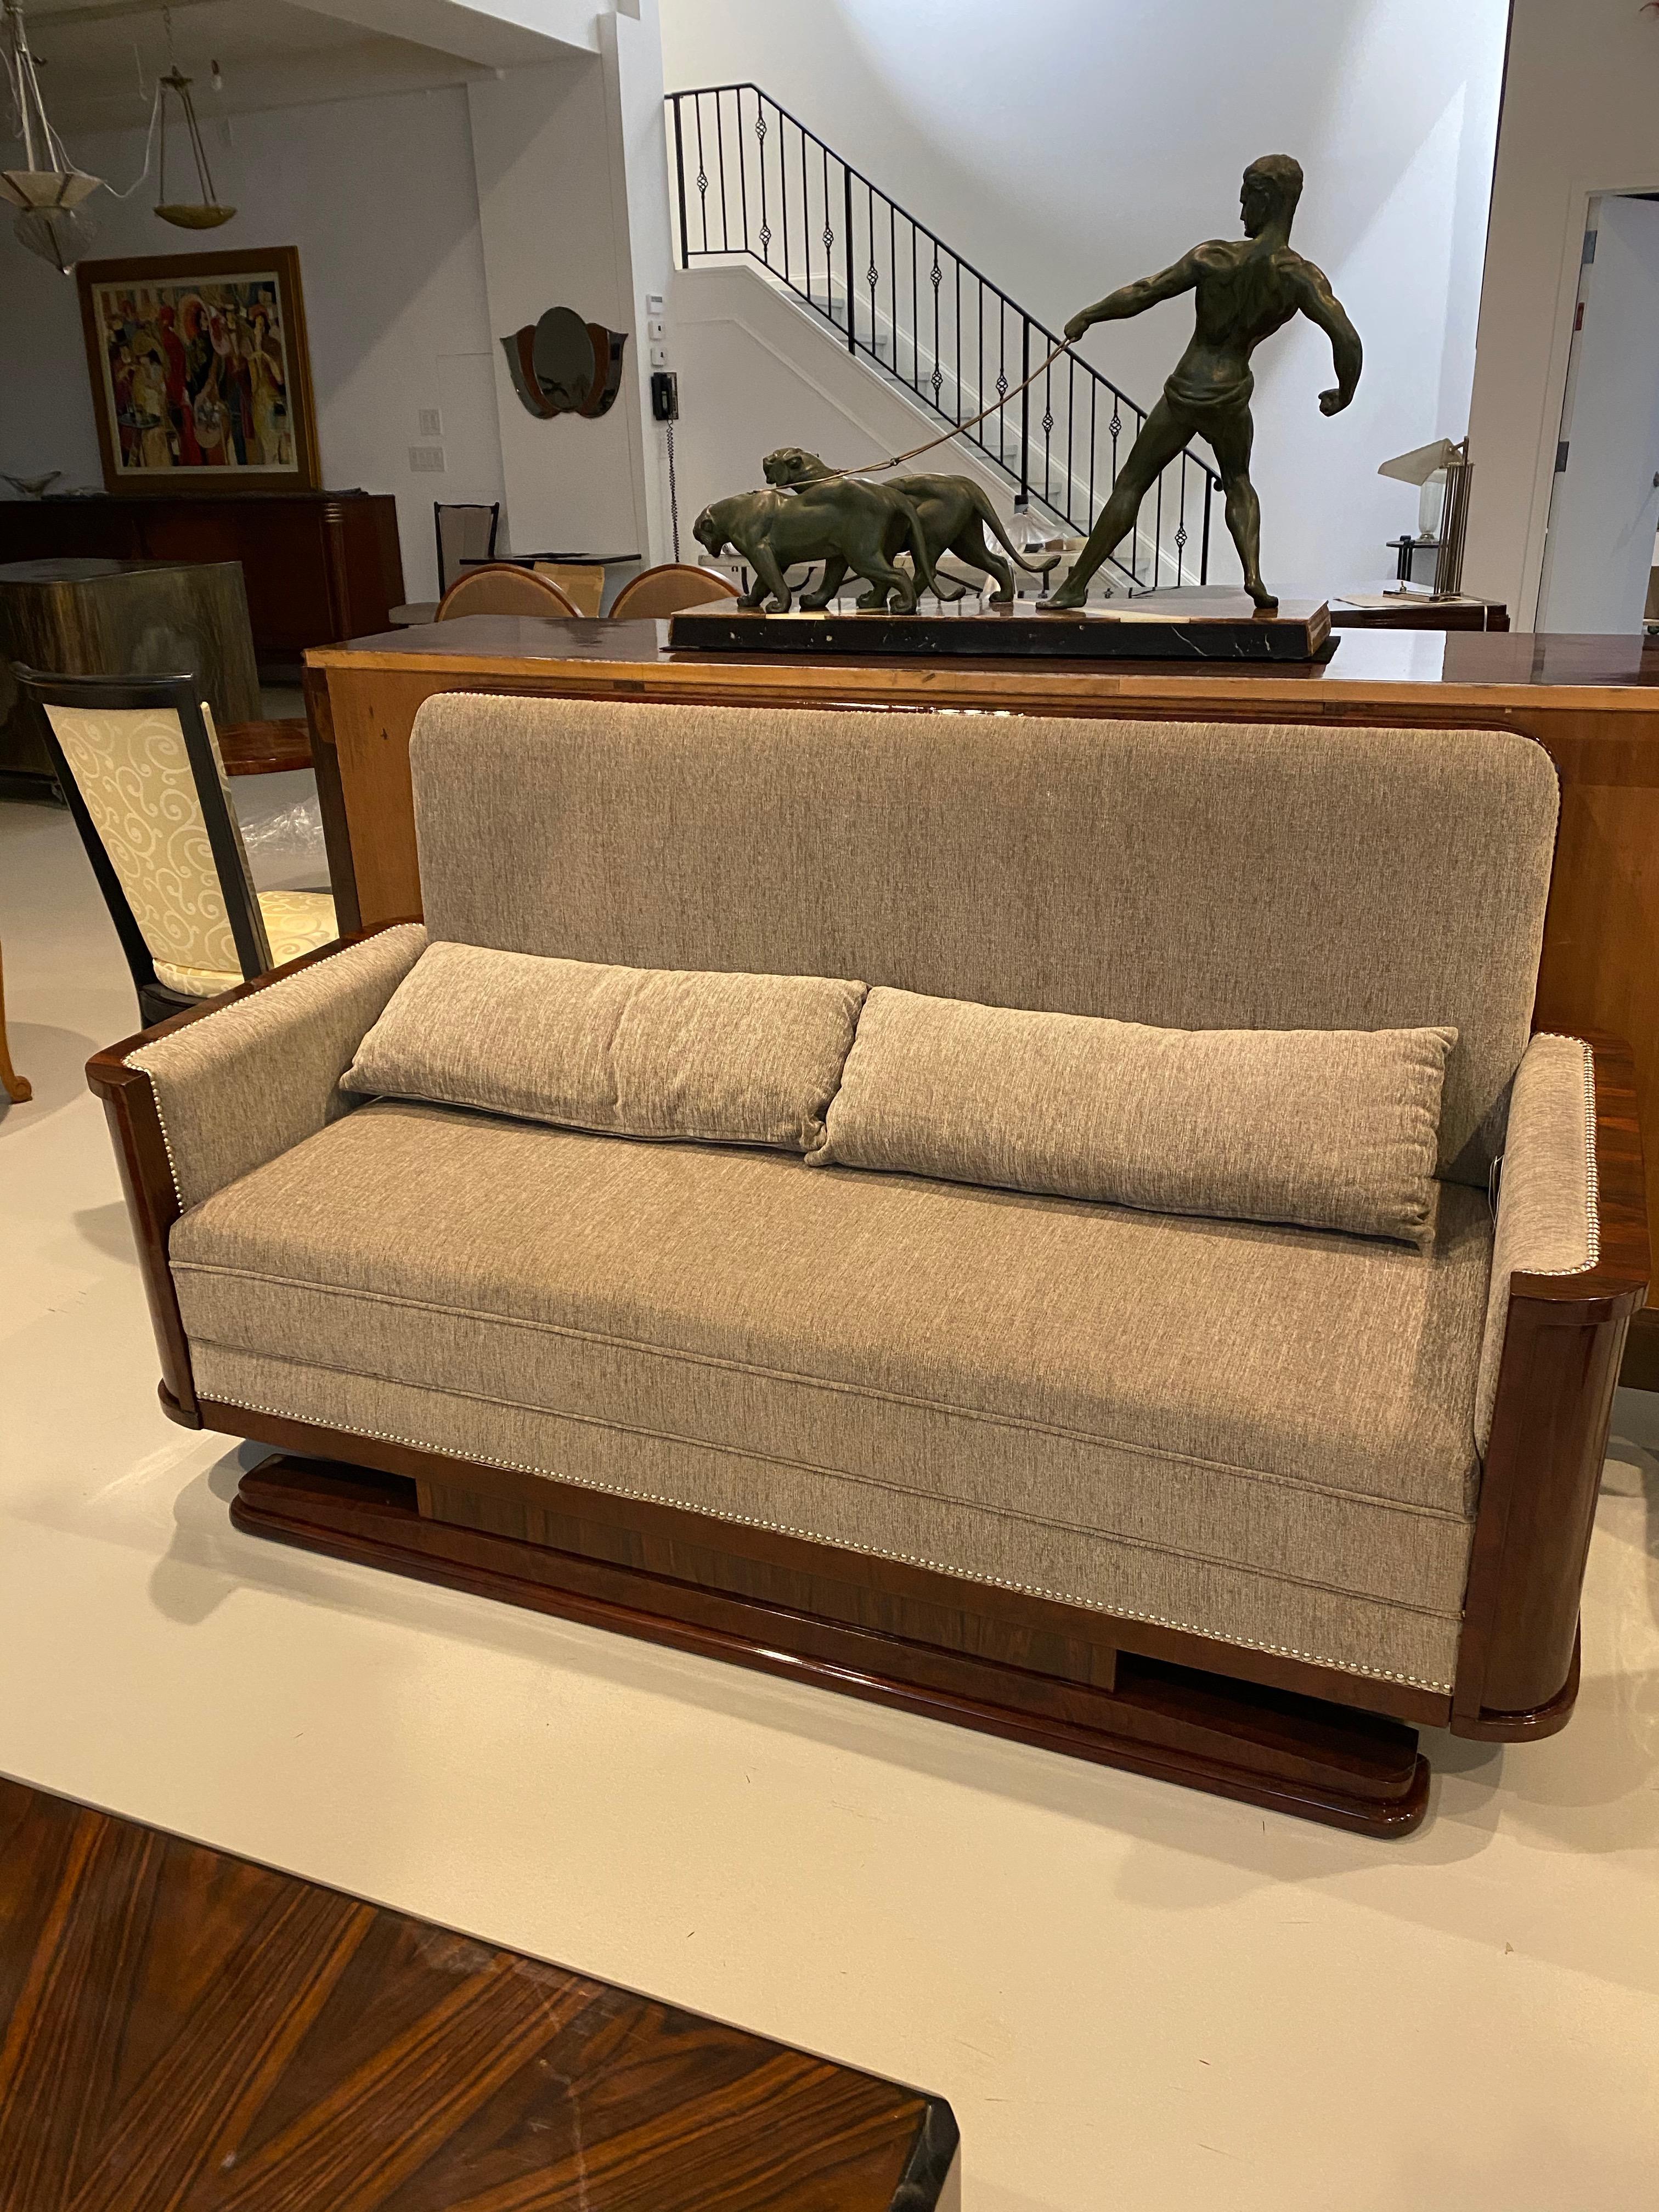 Französisches Art Deco Makassar Sofa oder Couch. Mit schönem Makassar-Holz mit Deko-Linien. Wurde von einem Kunsthandwerker in dritter Generation restauriert.